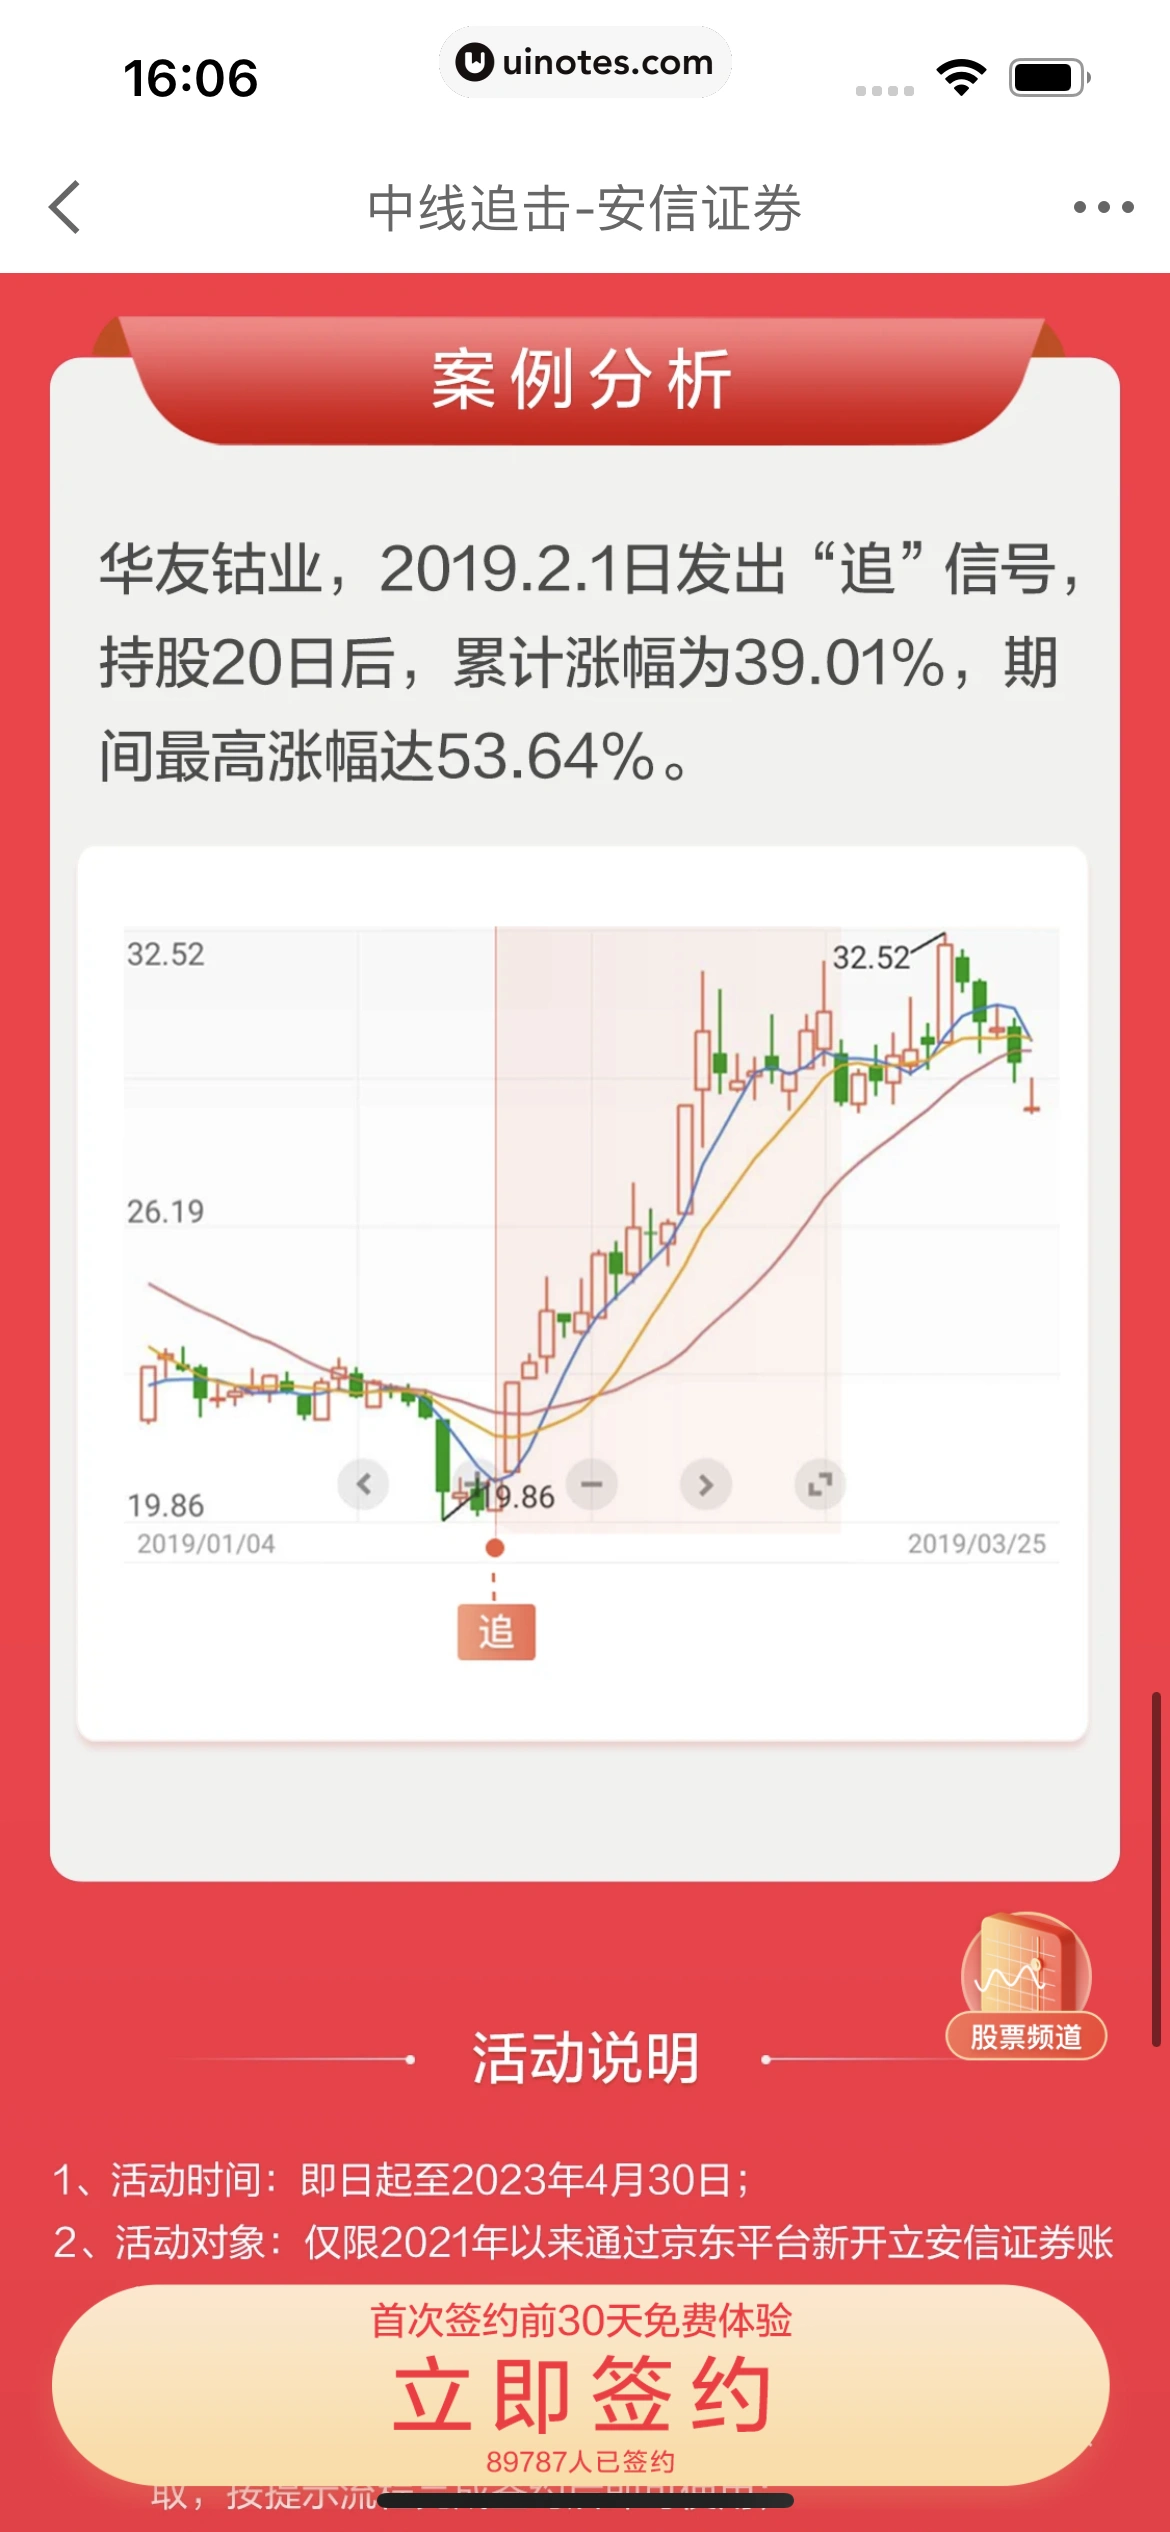 京东金融 App 截图 348 - UI Notes